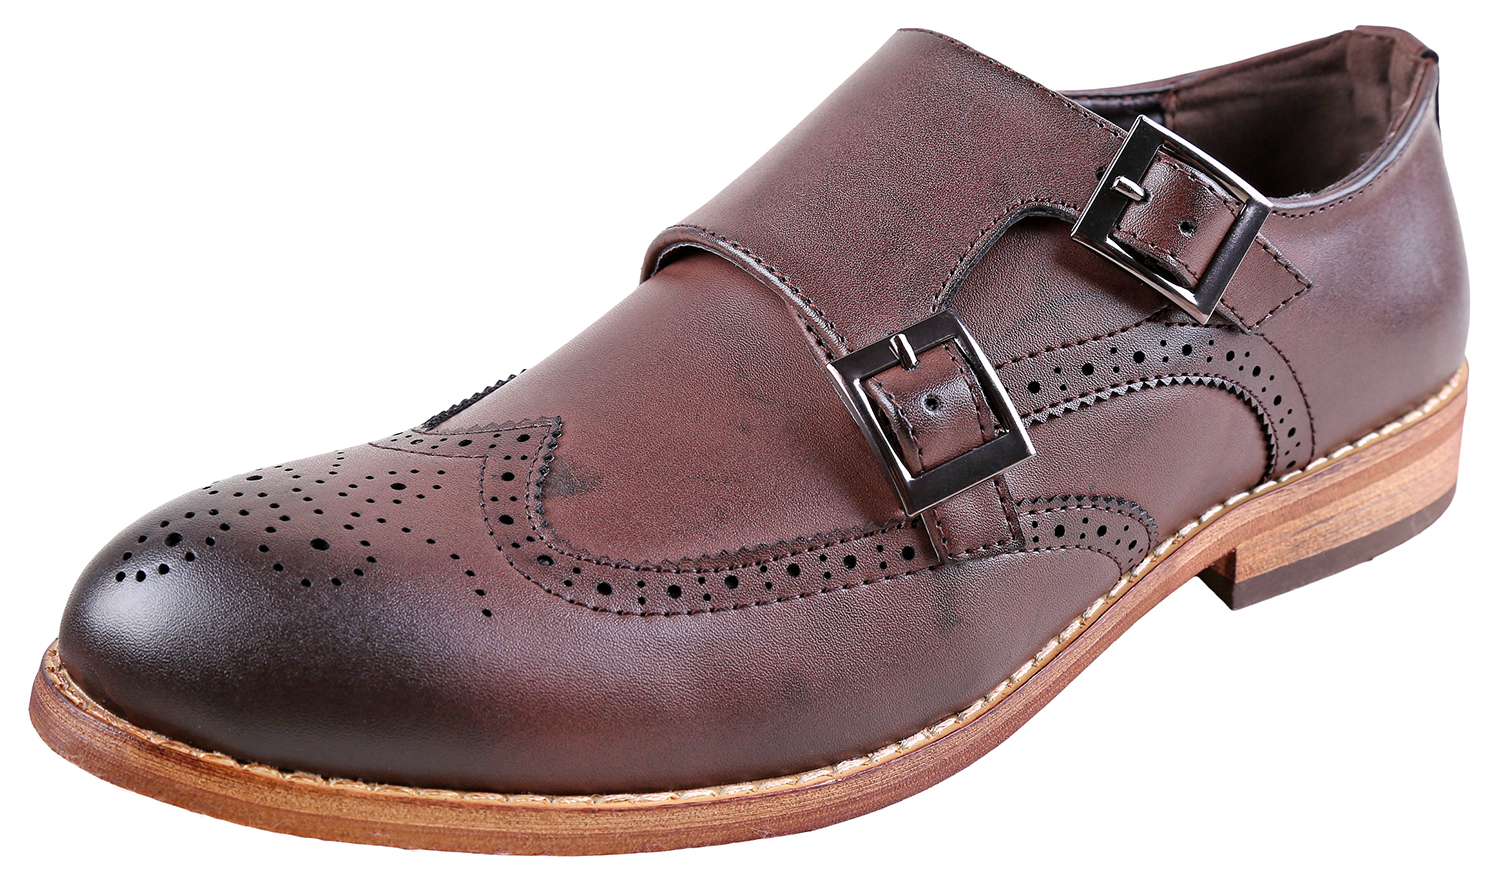 Urban Fox Allen Men's Dress Shoe | Double Monk Strap | Brogue | Wingtip Shoes for Men | Dark Brown 12 M US - image 1 of 7